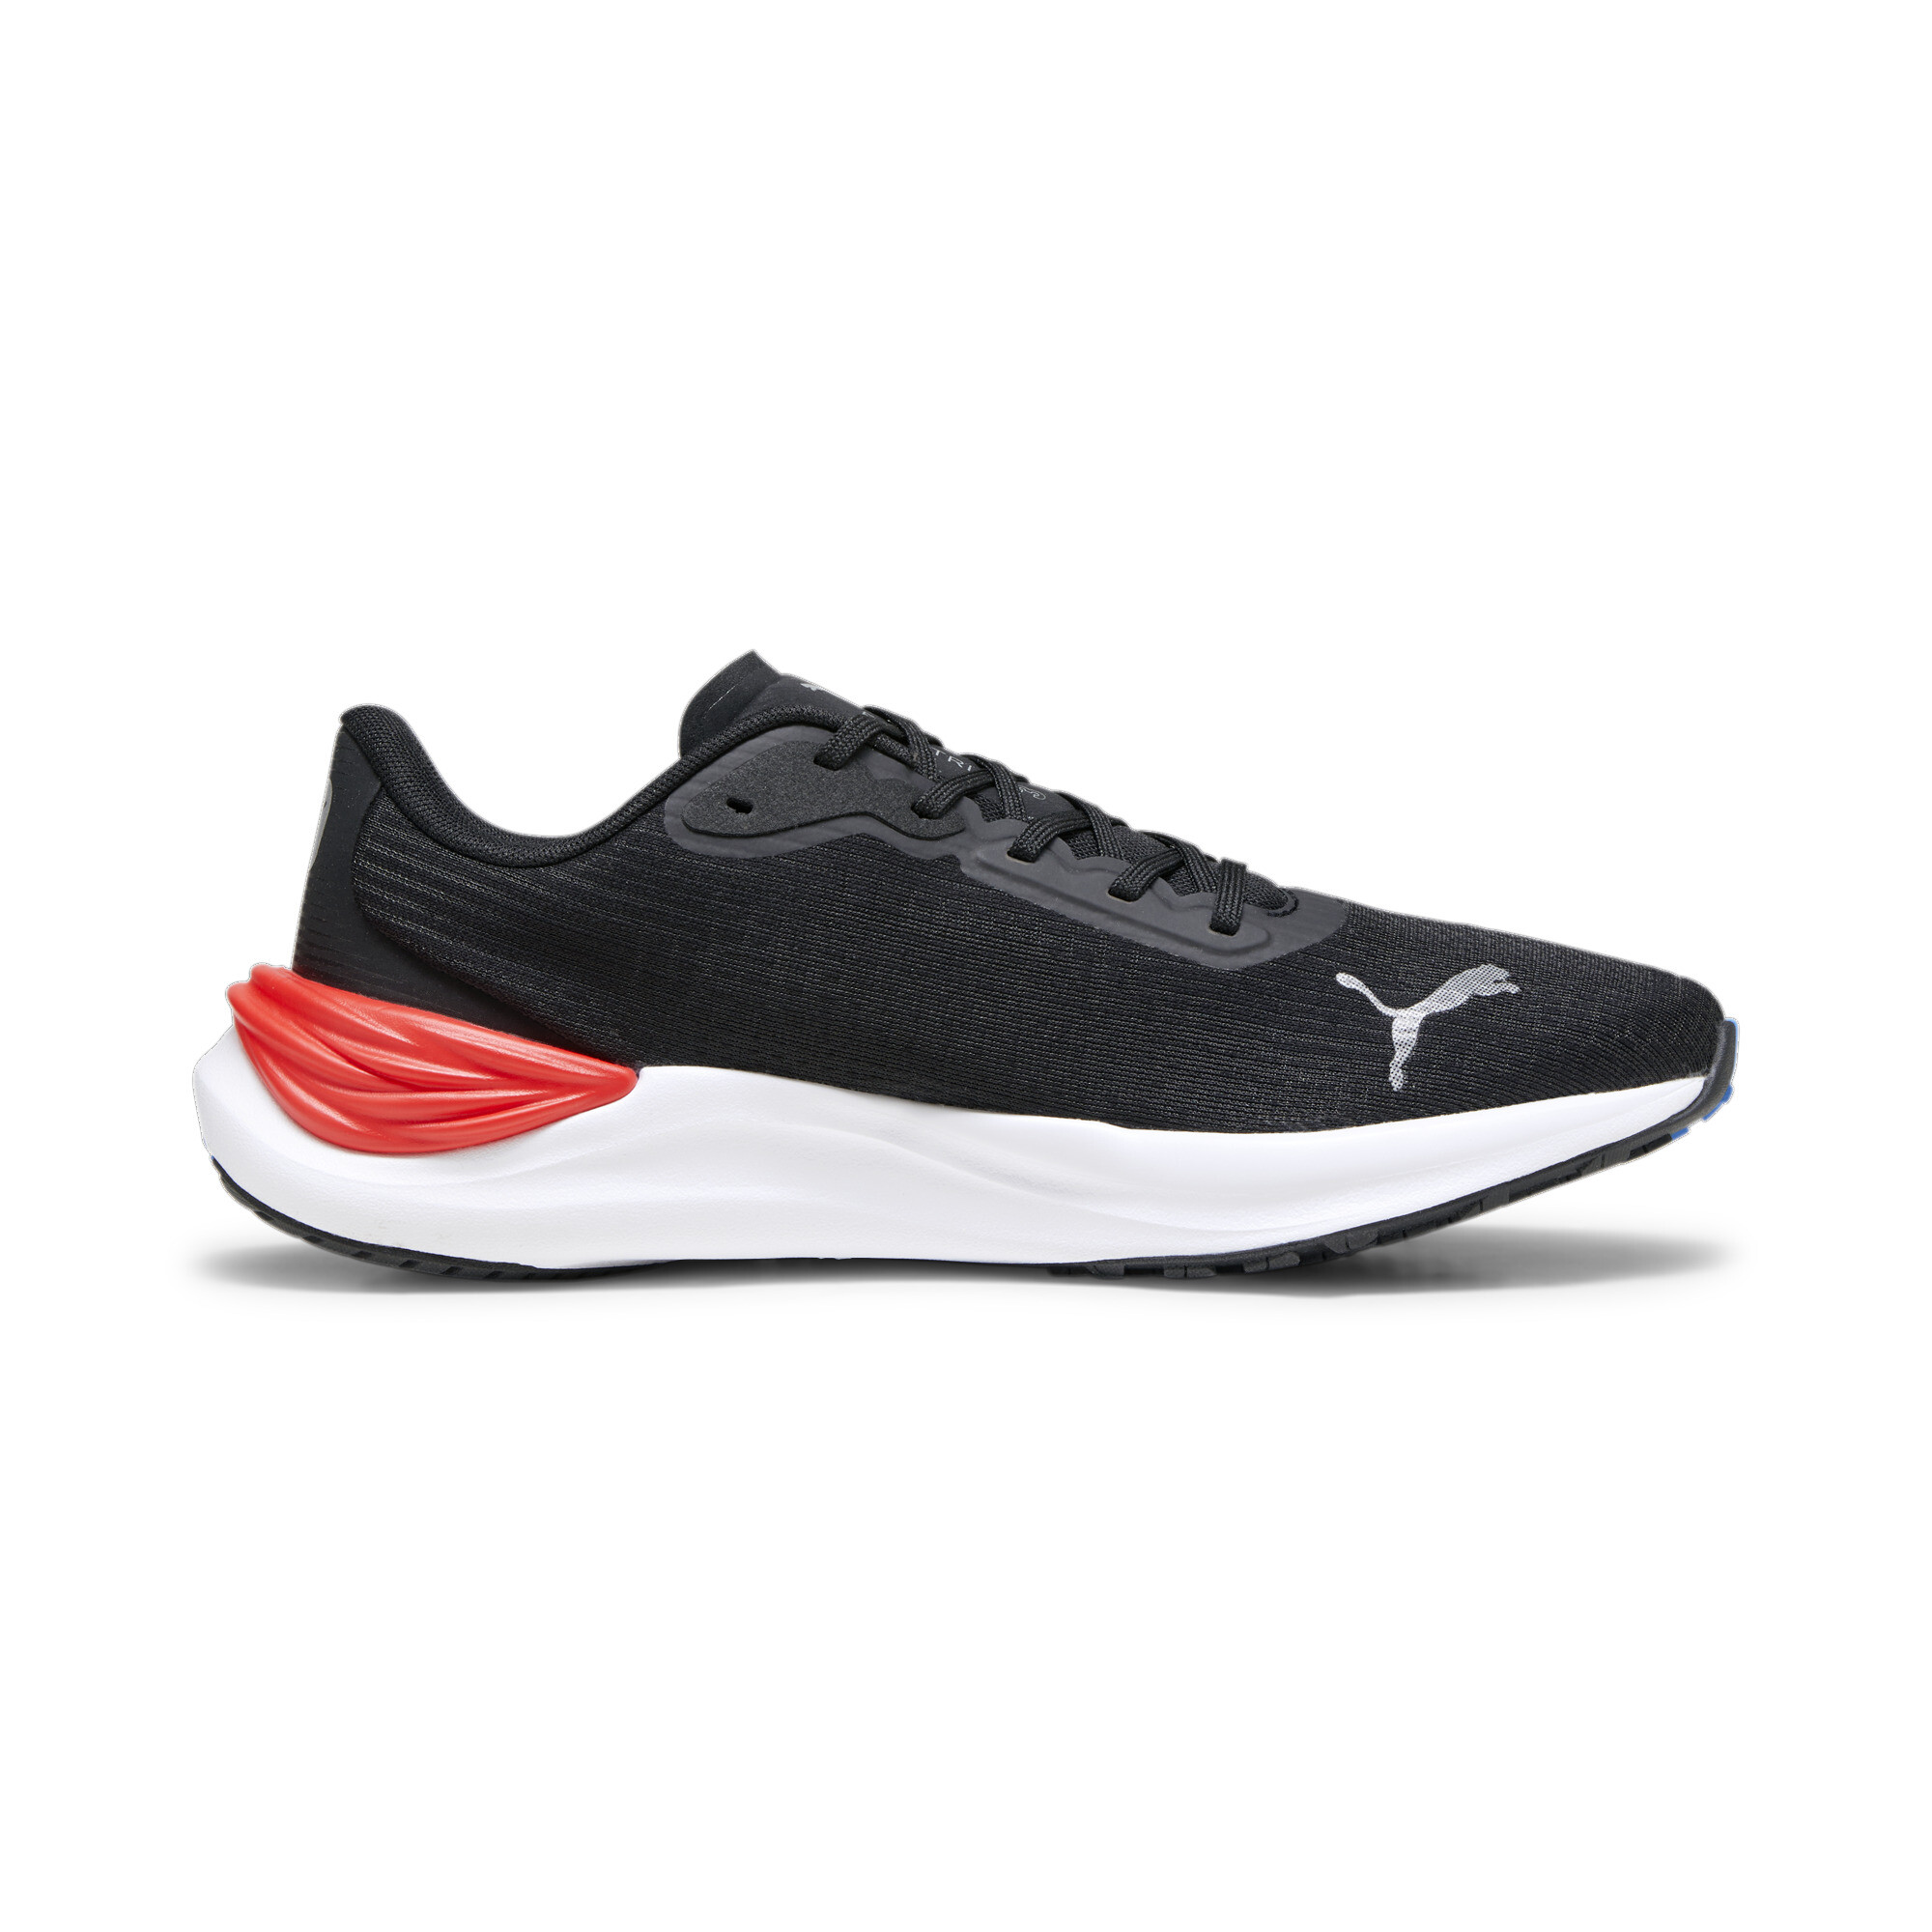 Men's PUMA Electrify NITROâ¢ 3 Running Shoes In Black, Size EU 40.5